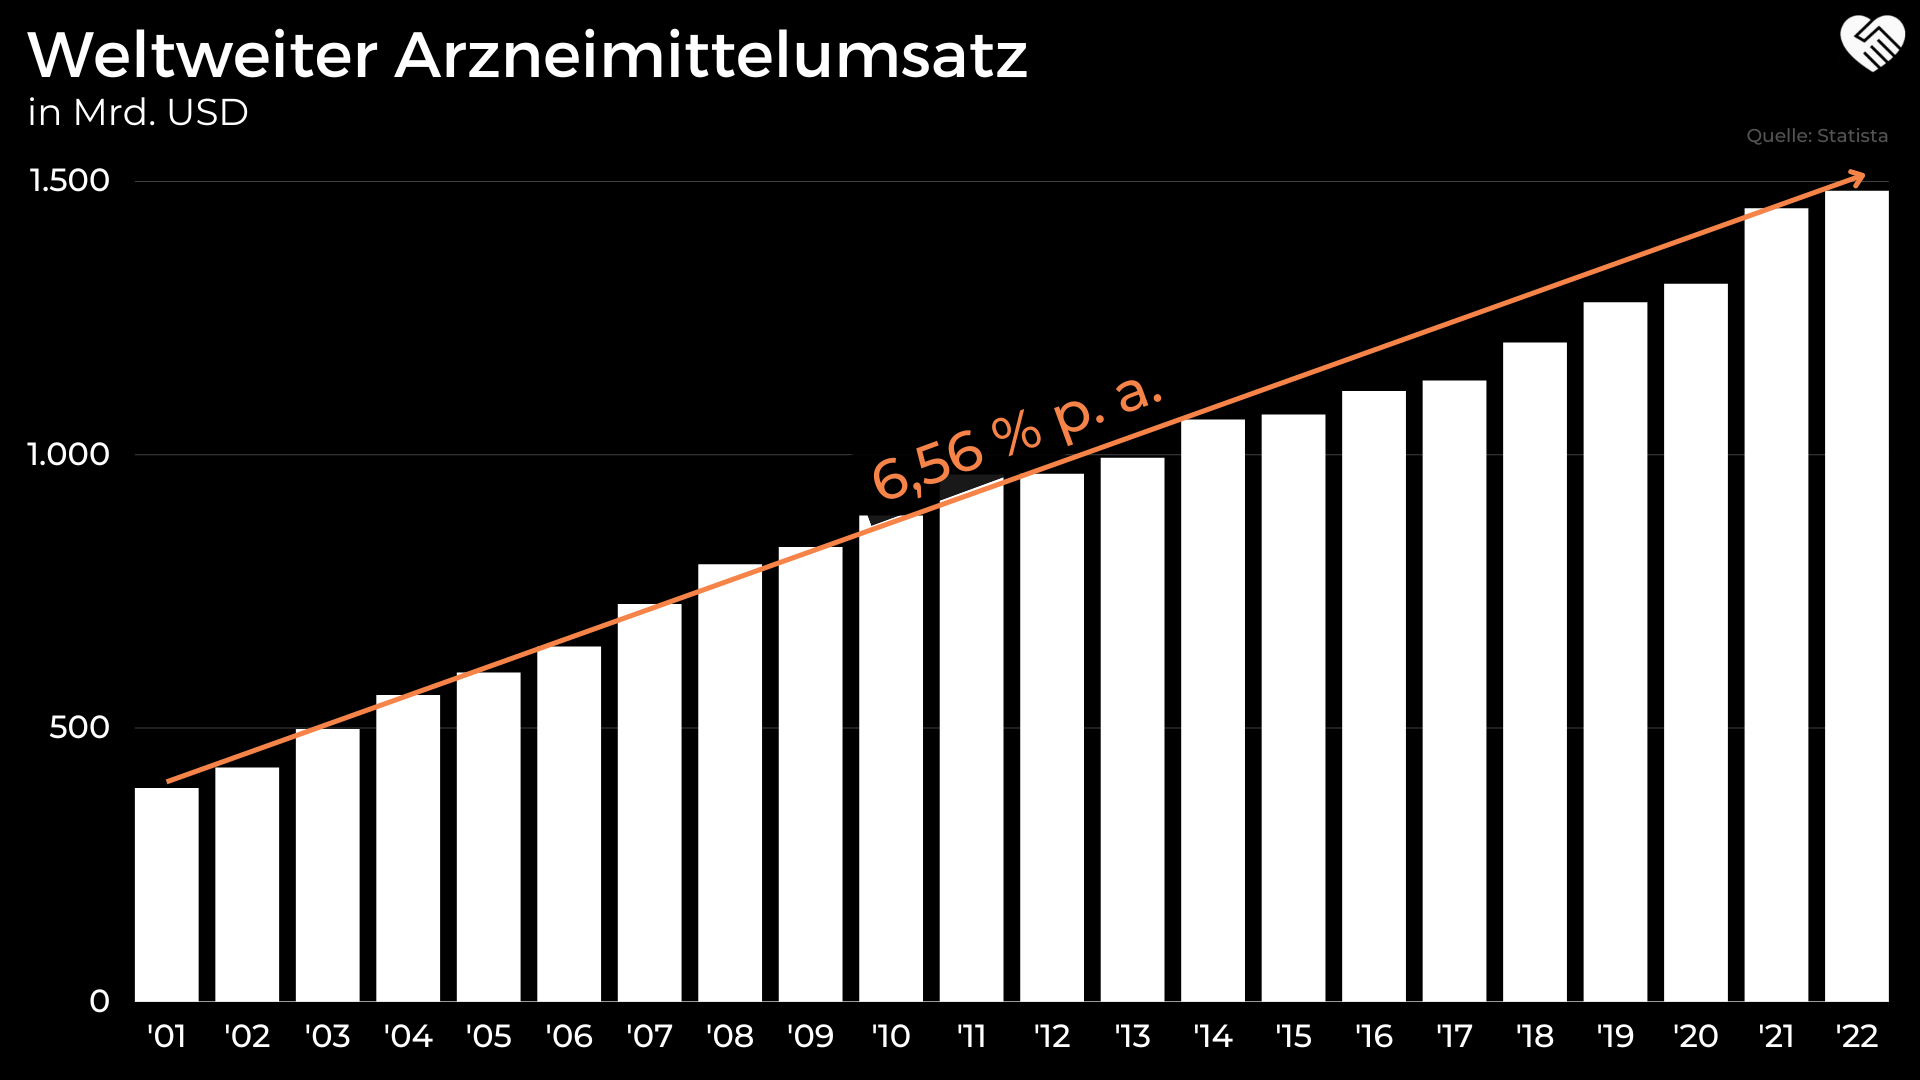 AstraZeneca Aktie Analyse - Der unterschätzte Pharma-Konzern?